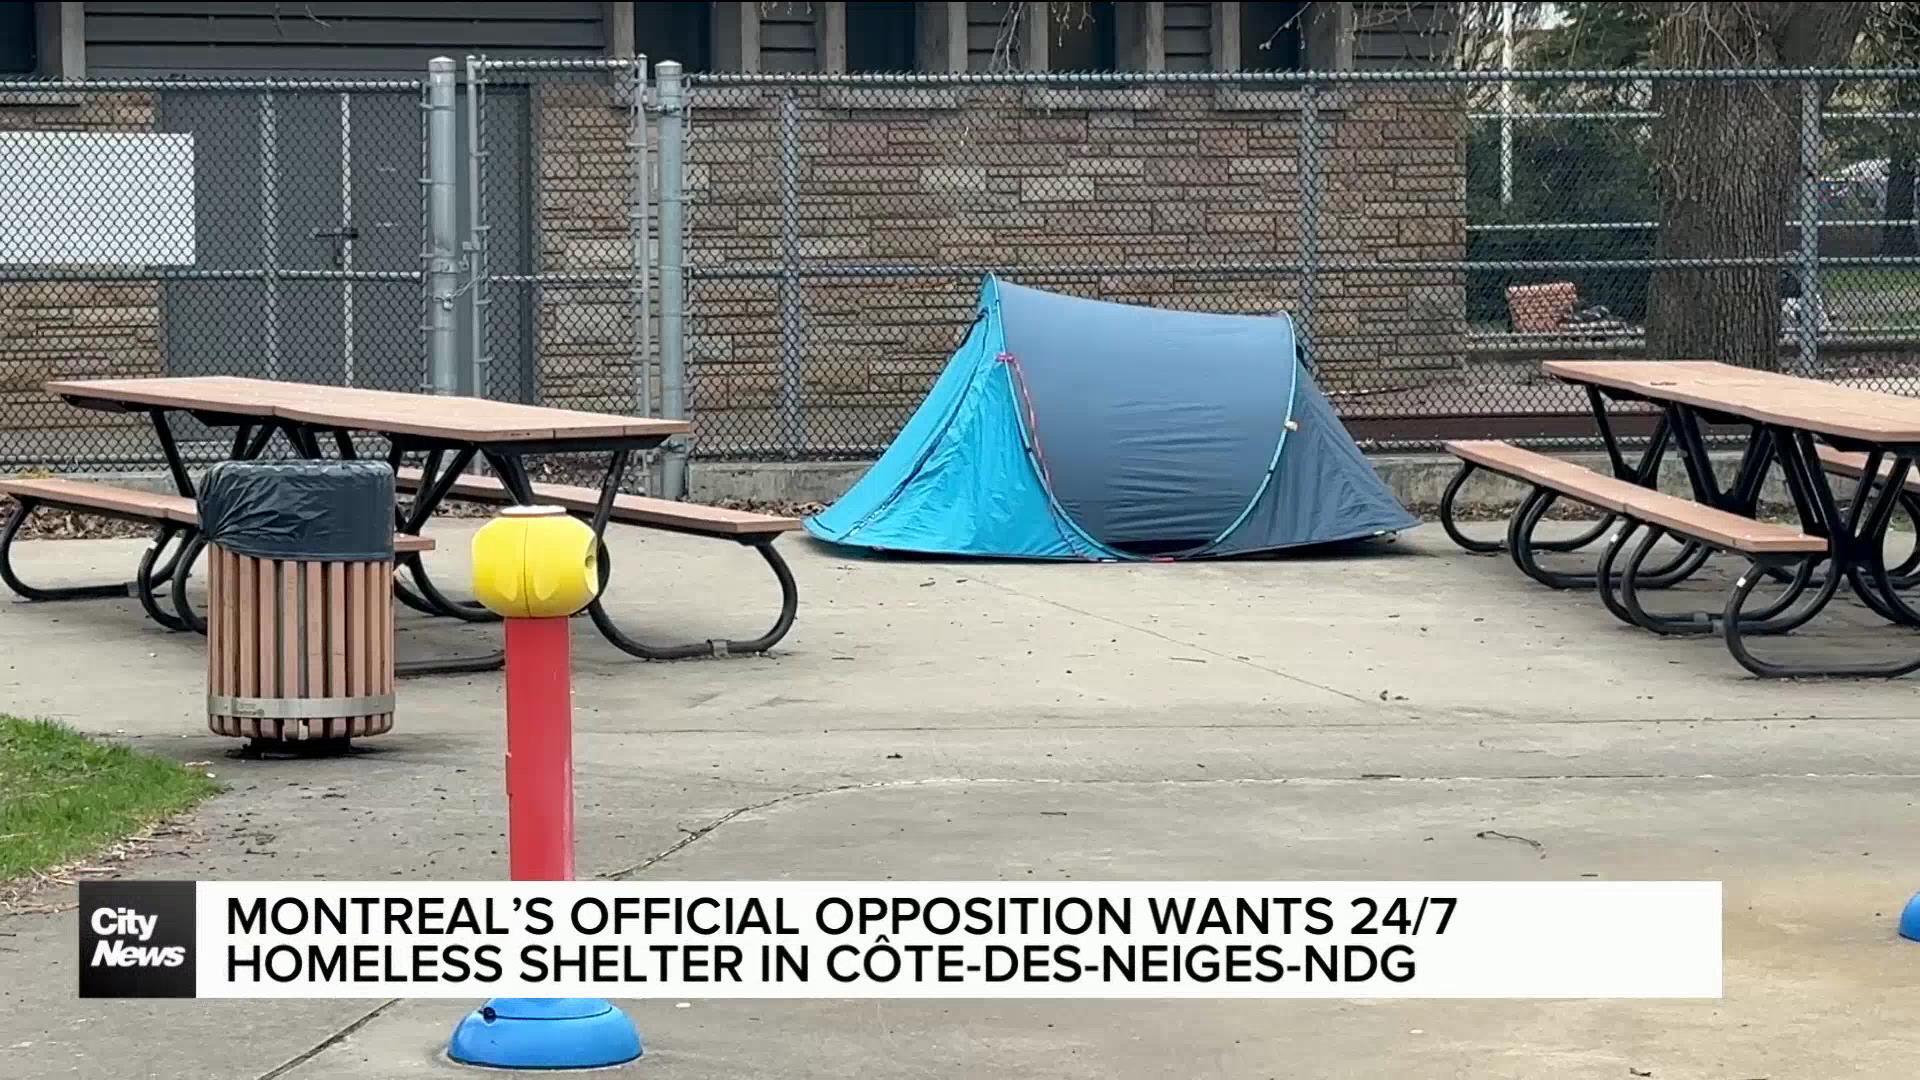 Montreal’s Official Opposition wants 24/7 homeless shelter CDN-NDG